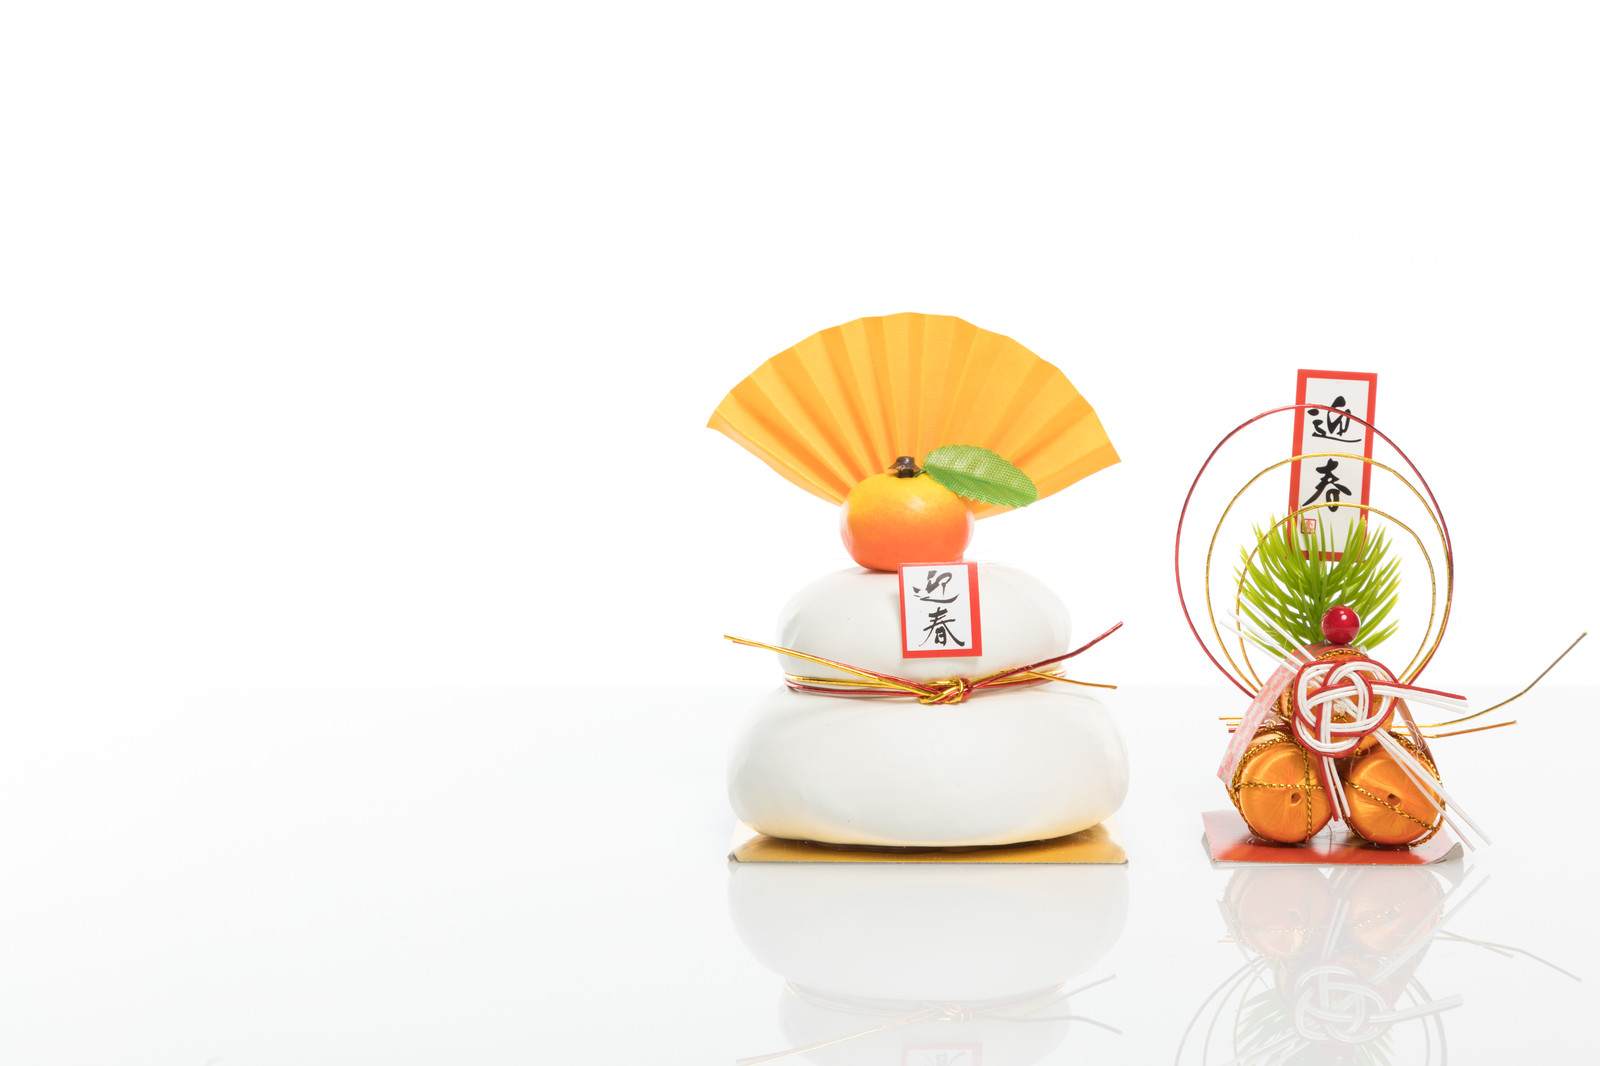 【1月といえば】日本の伝統行事・食べ物・風物詩【歳時記】